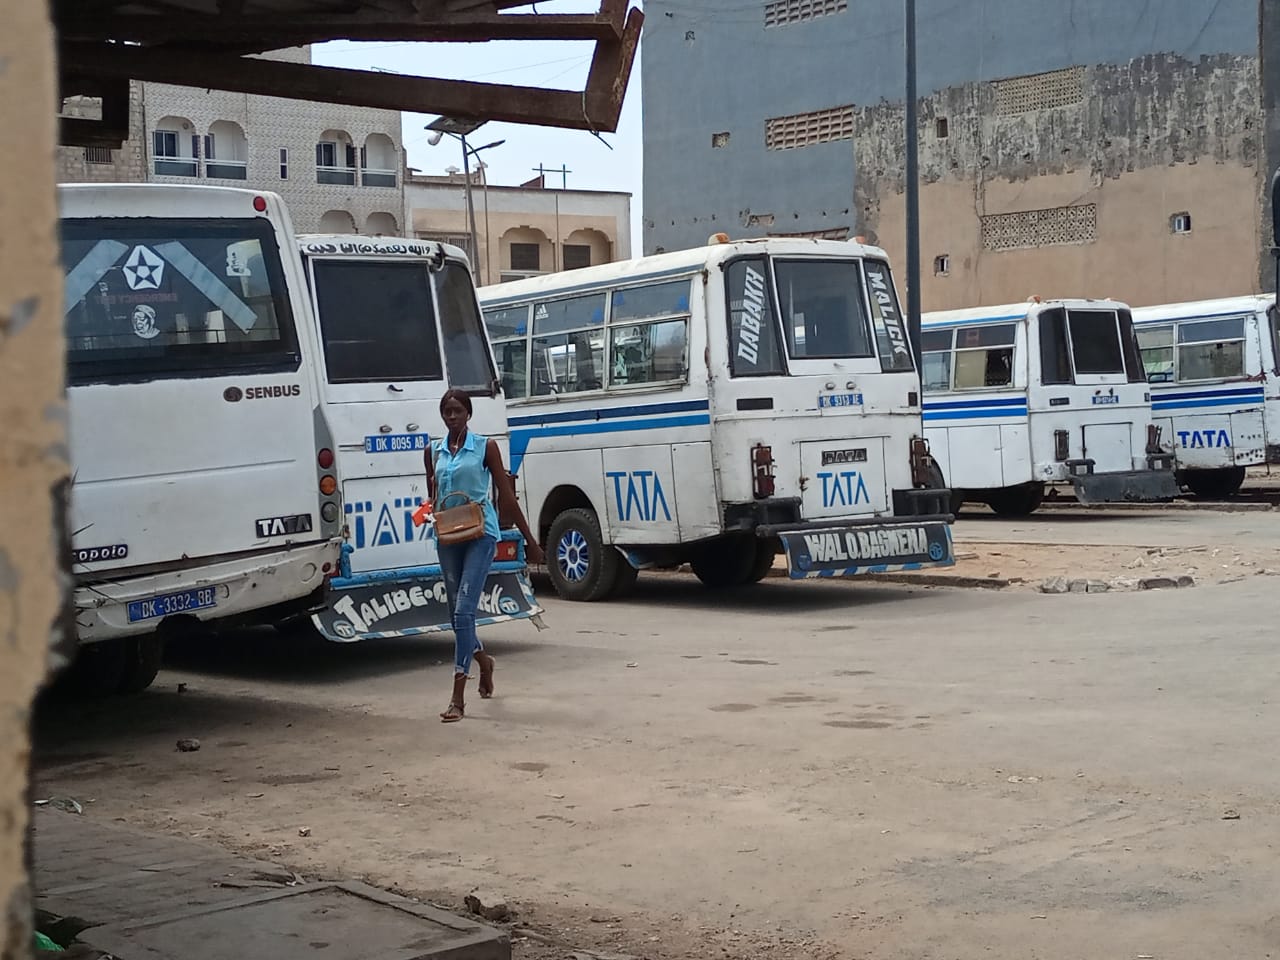 Hausse des prix : Les bus Tata défient l’Etat…les usagers en colère